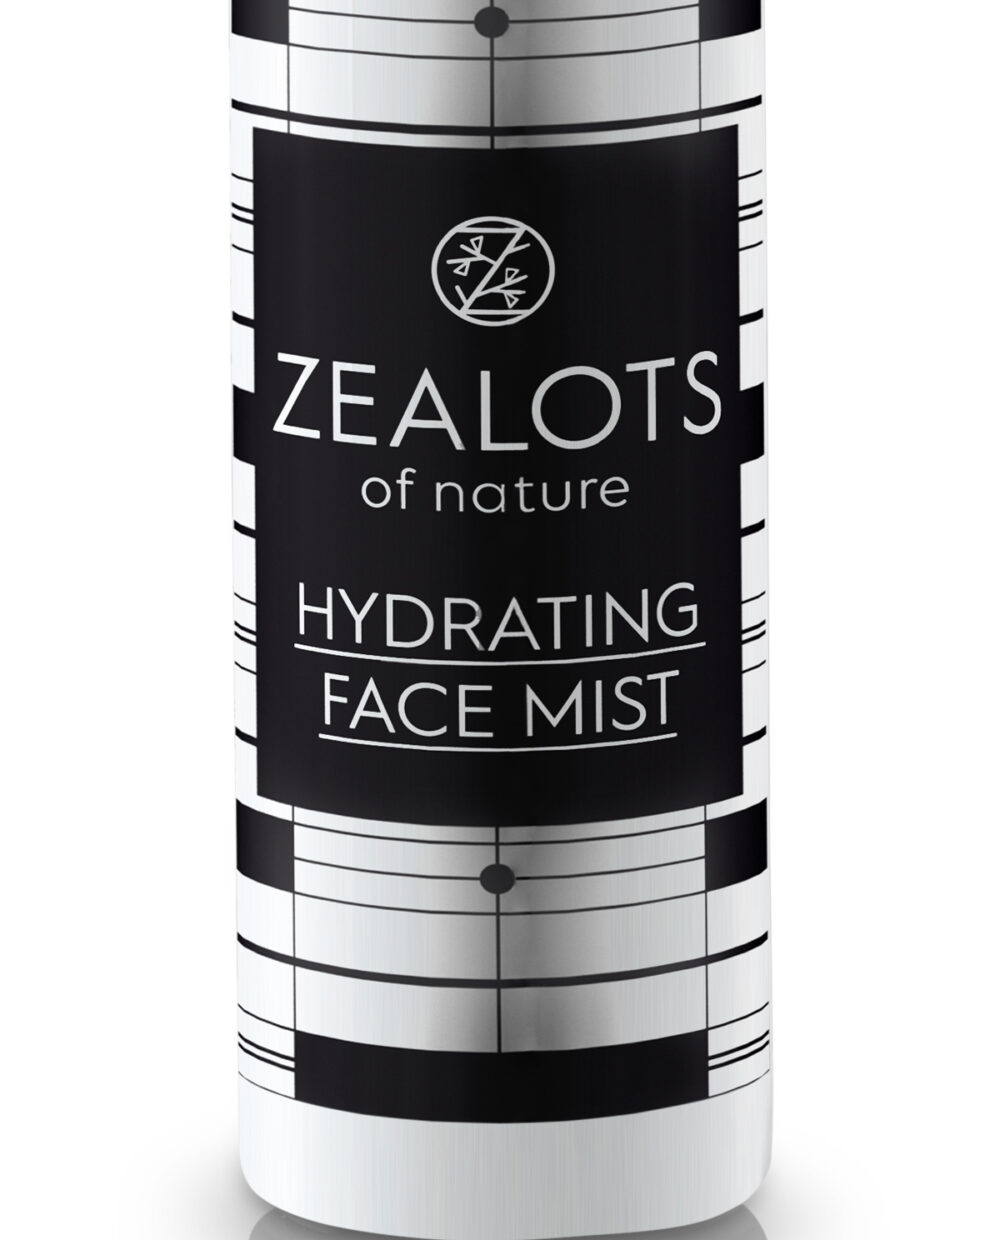 Mist hidratant pentru fata Zealots